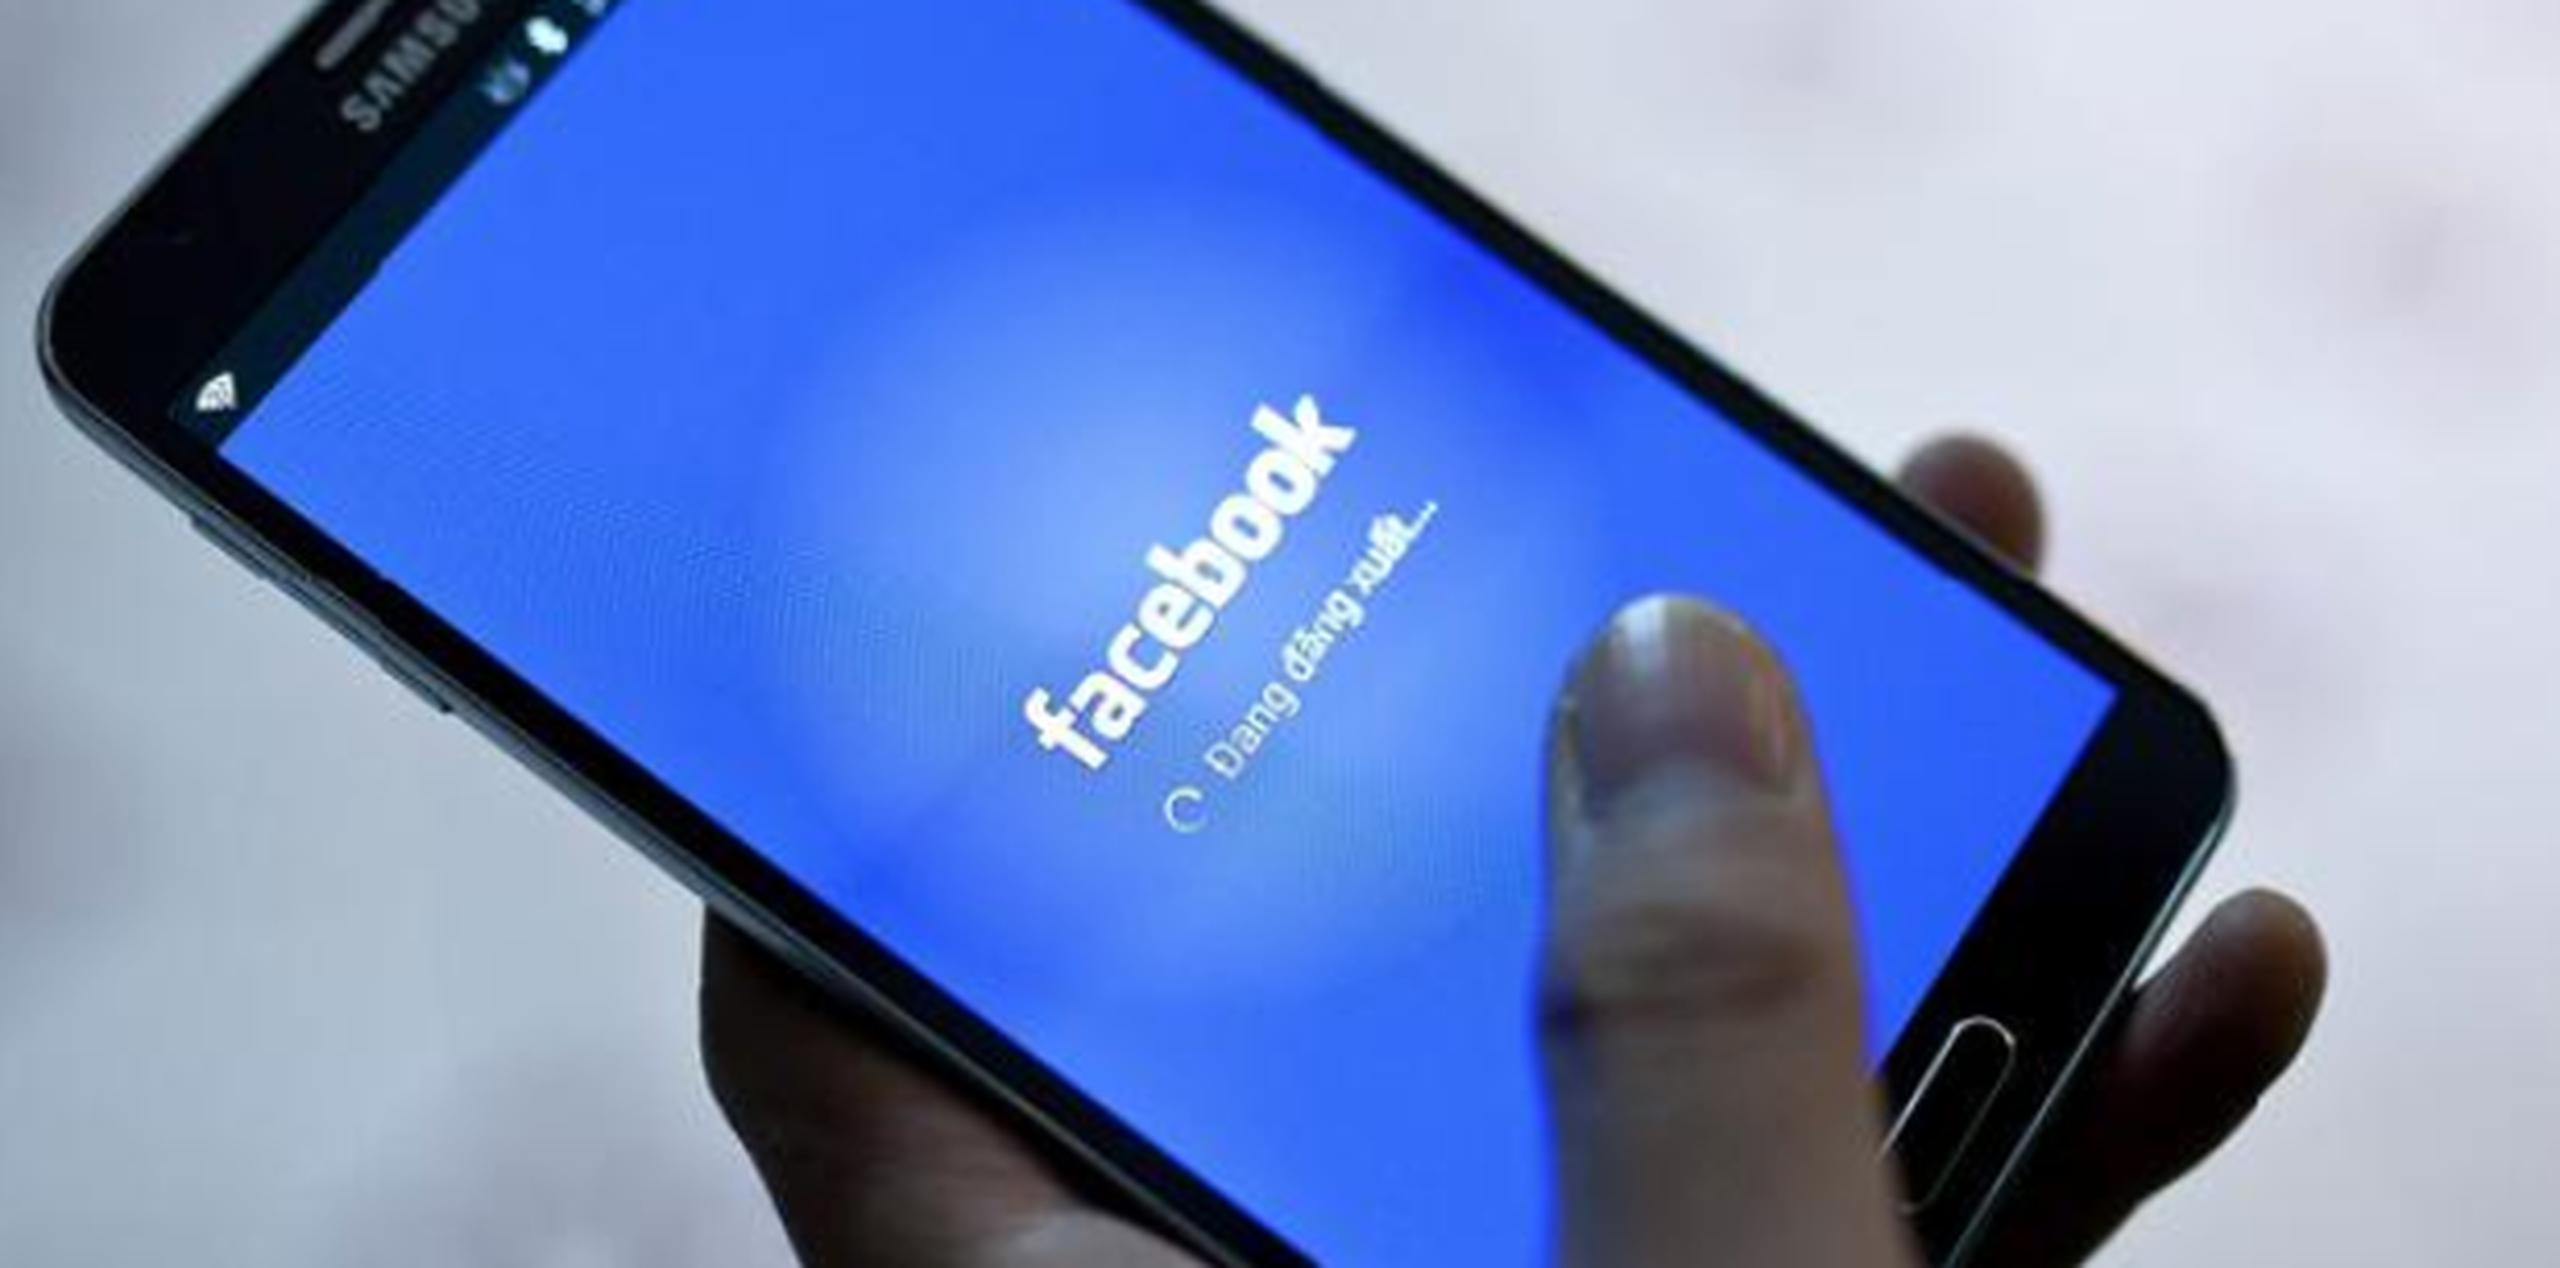 La Comisión Nacional sobre Informática y Libertad dijo que Facebook Inc. y Facebook Irlanda llevaron a cabo una "recopilación de datos personales de manera masiva" para fines publicitarios "sin fundamento legal". (Archivo)